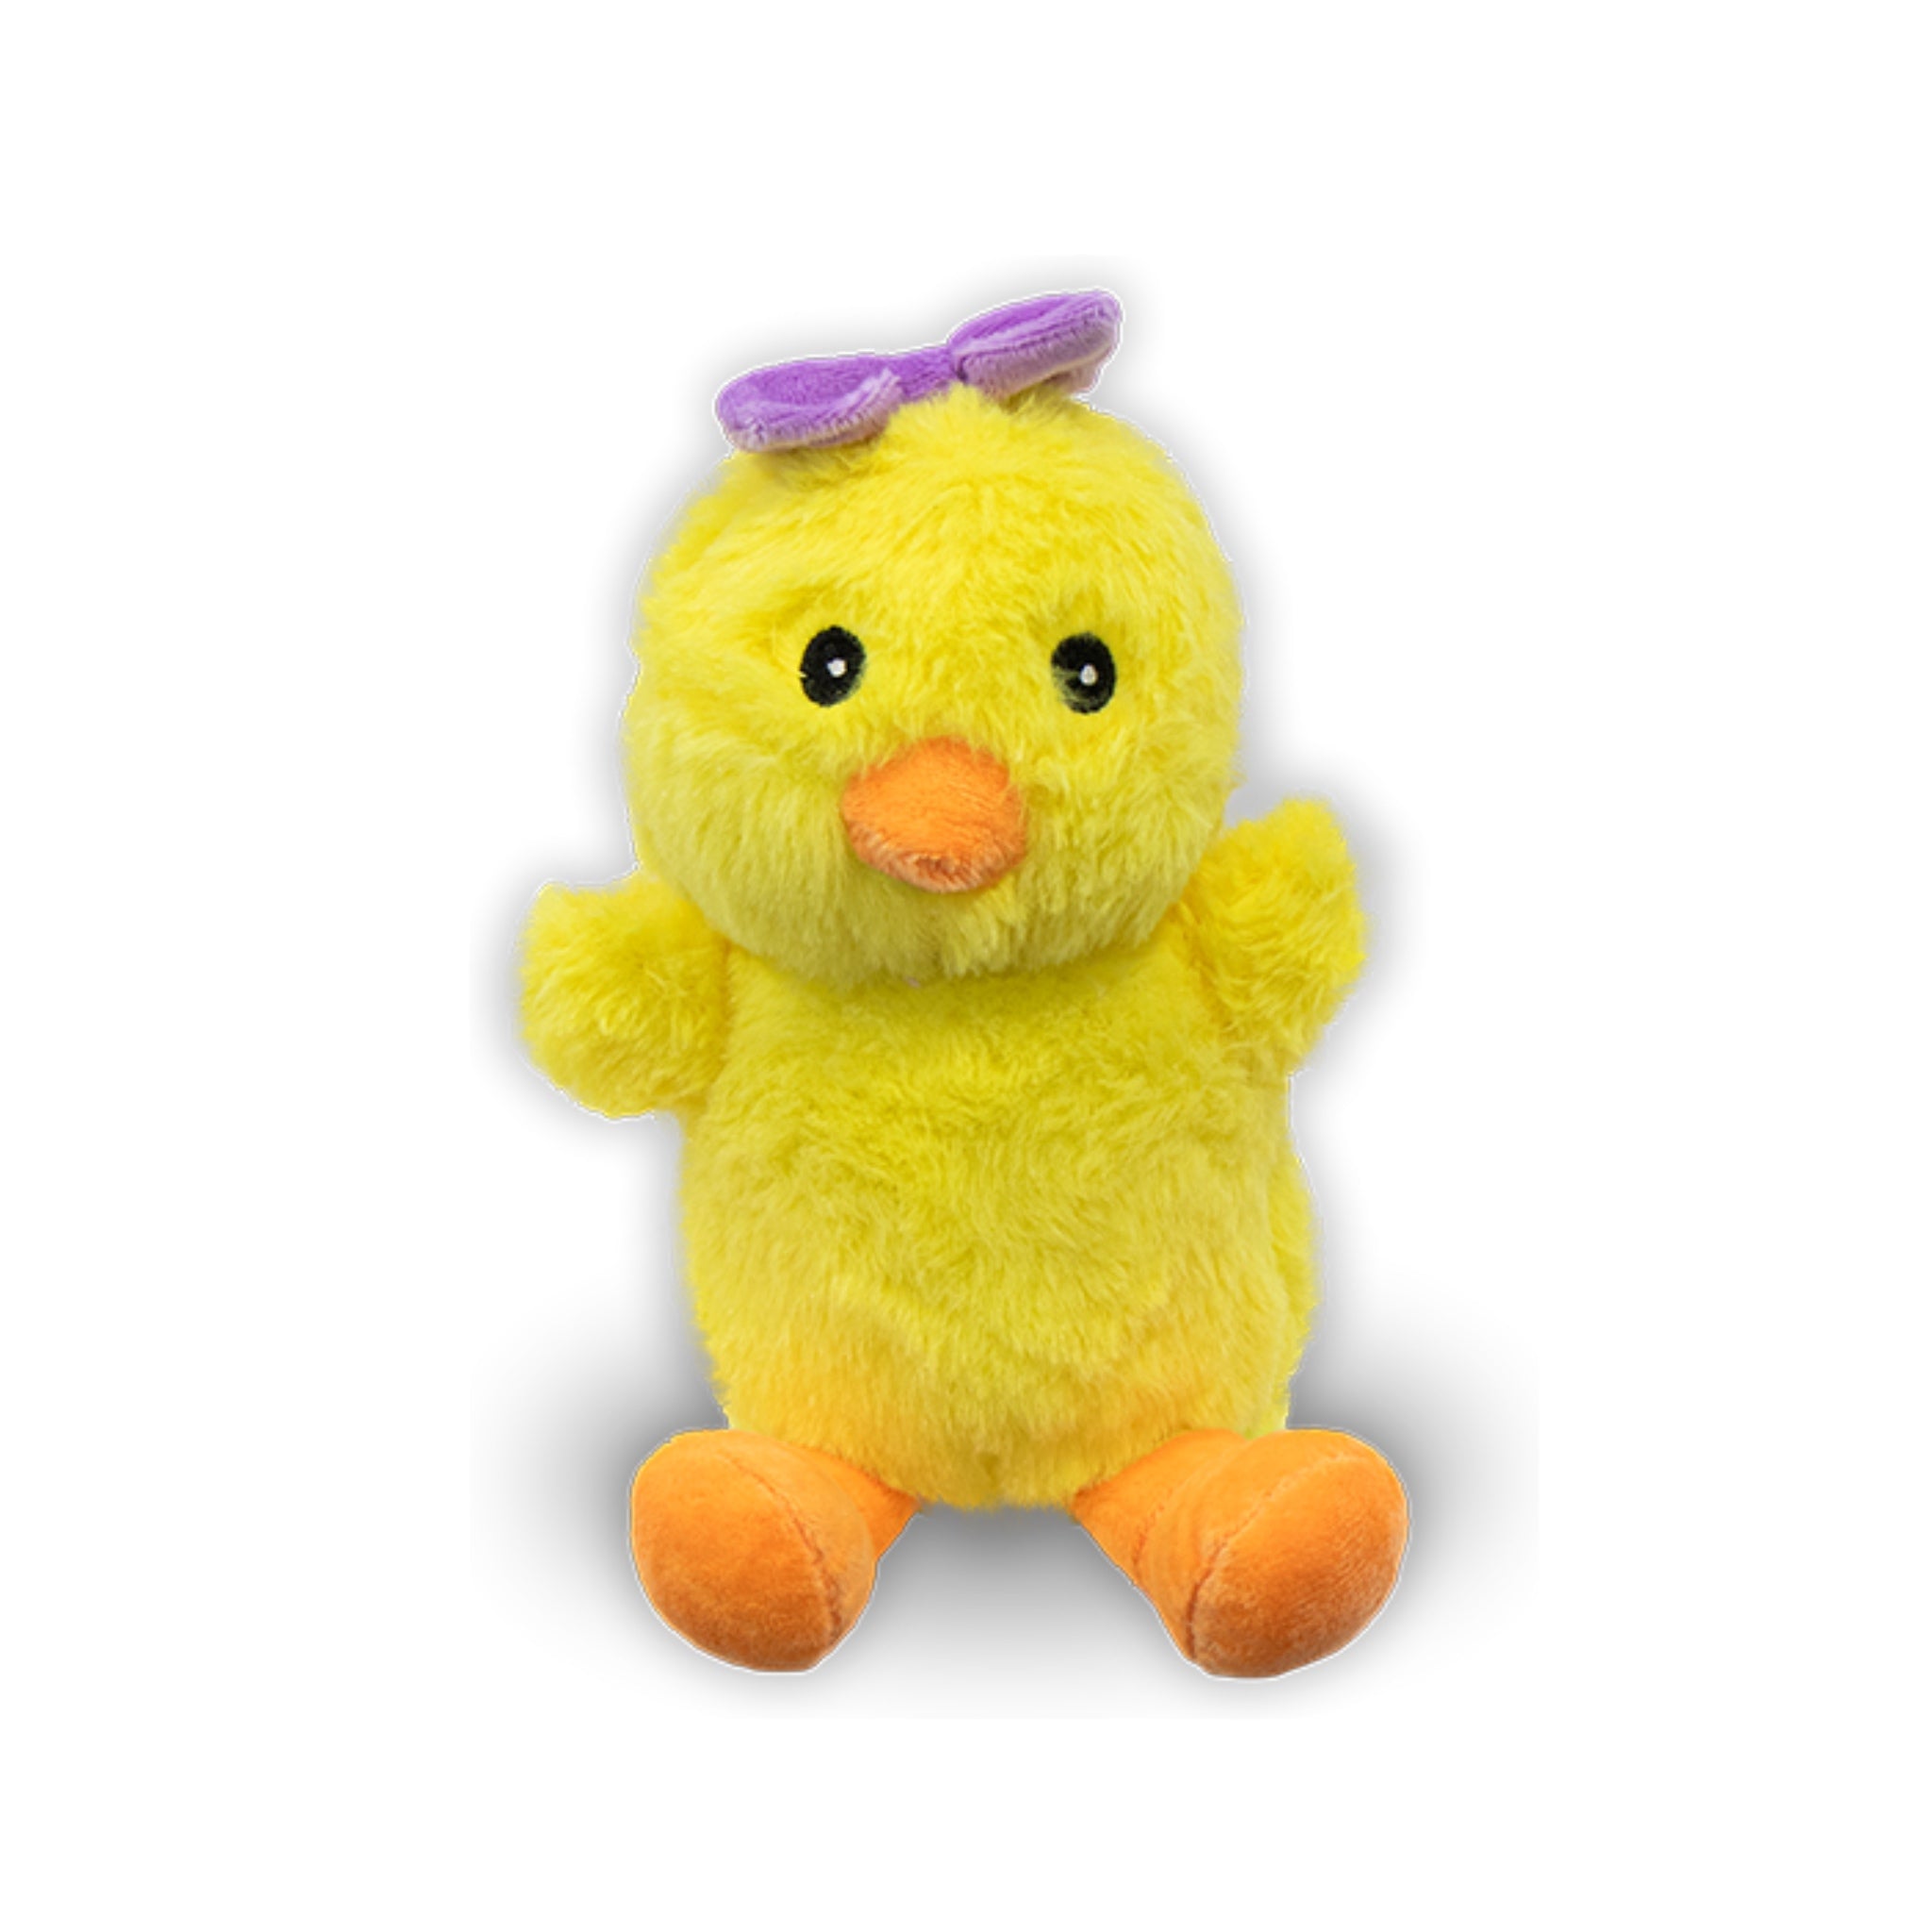 Pretty Chick Plush 7.5”